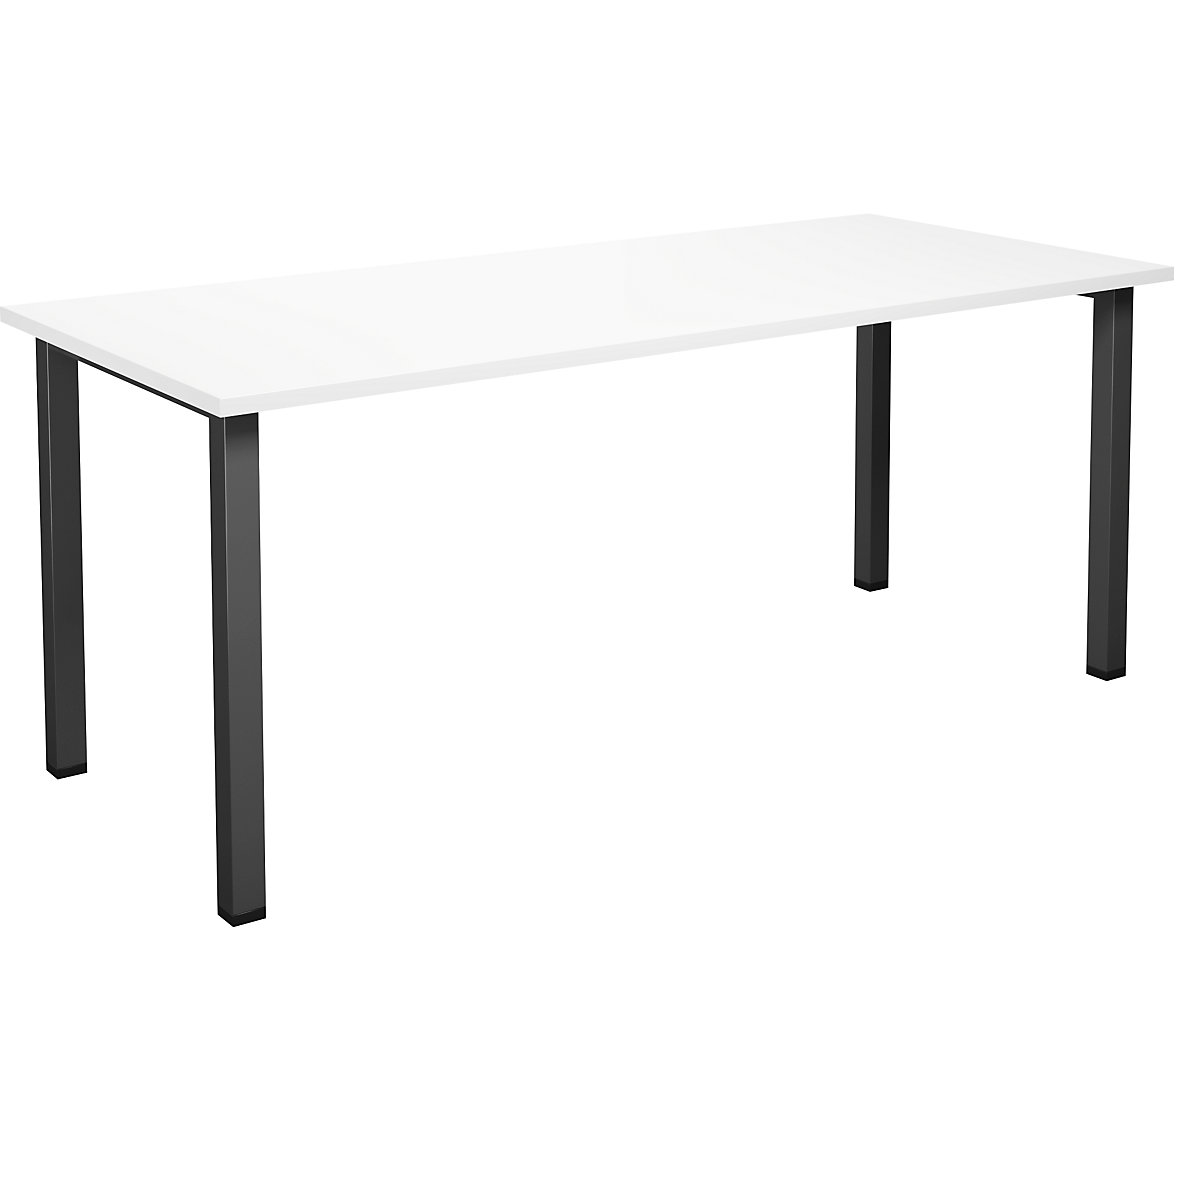 DUO-U multi-purpose desk, straight tabletop, WxD 1800 x 800 mm, white, black-8